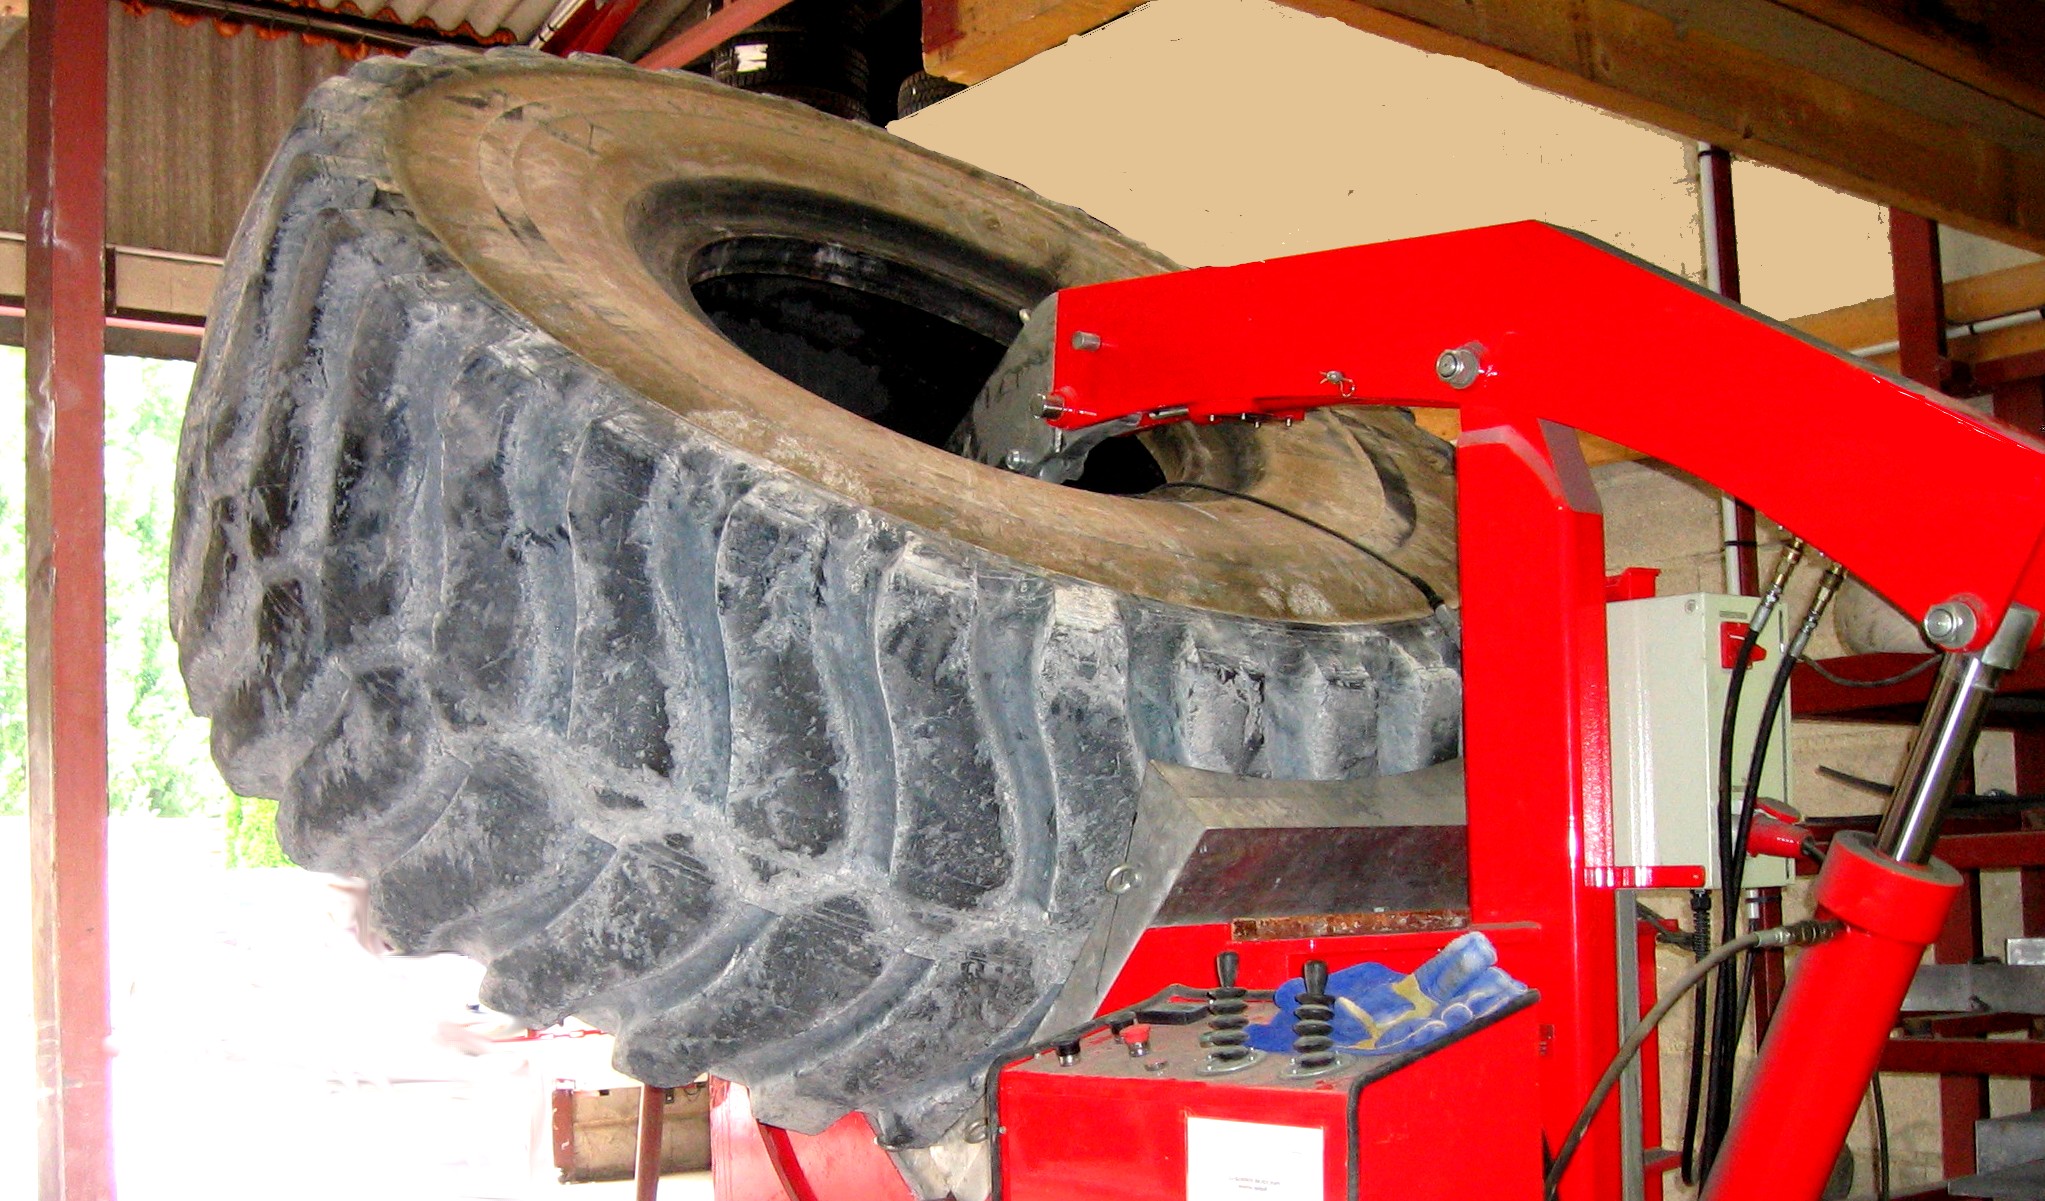 réparation à chaud ou vulcanisation des pneus proche de nimes - Vente de  pneus neufs et d'occasion à Montpellier - Comptoir du pneu 34